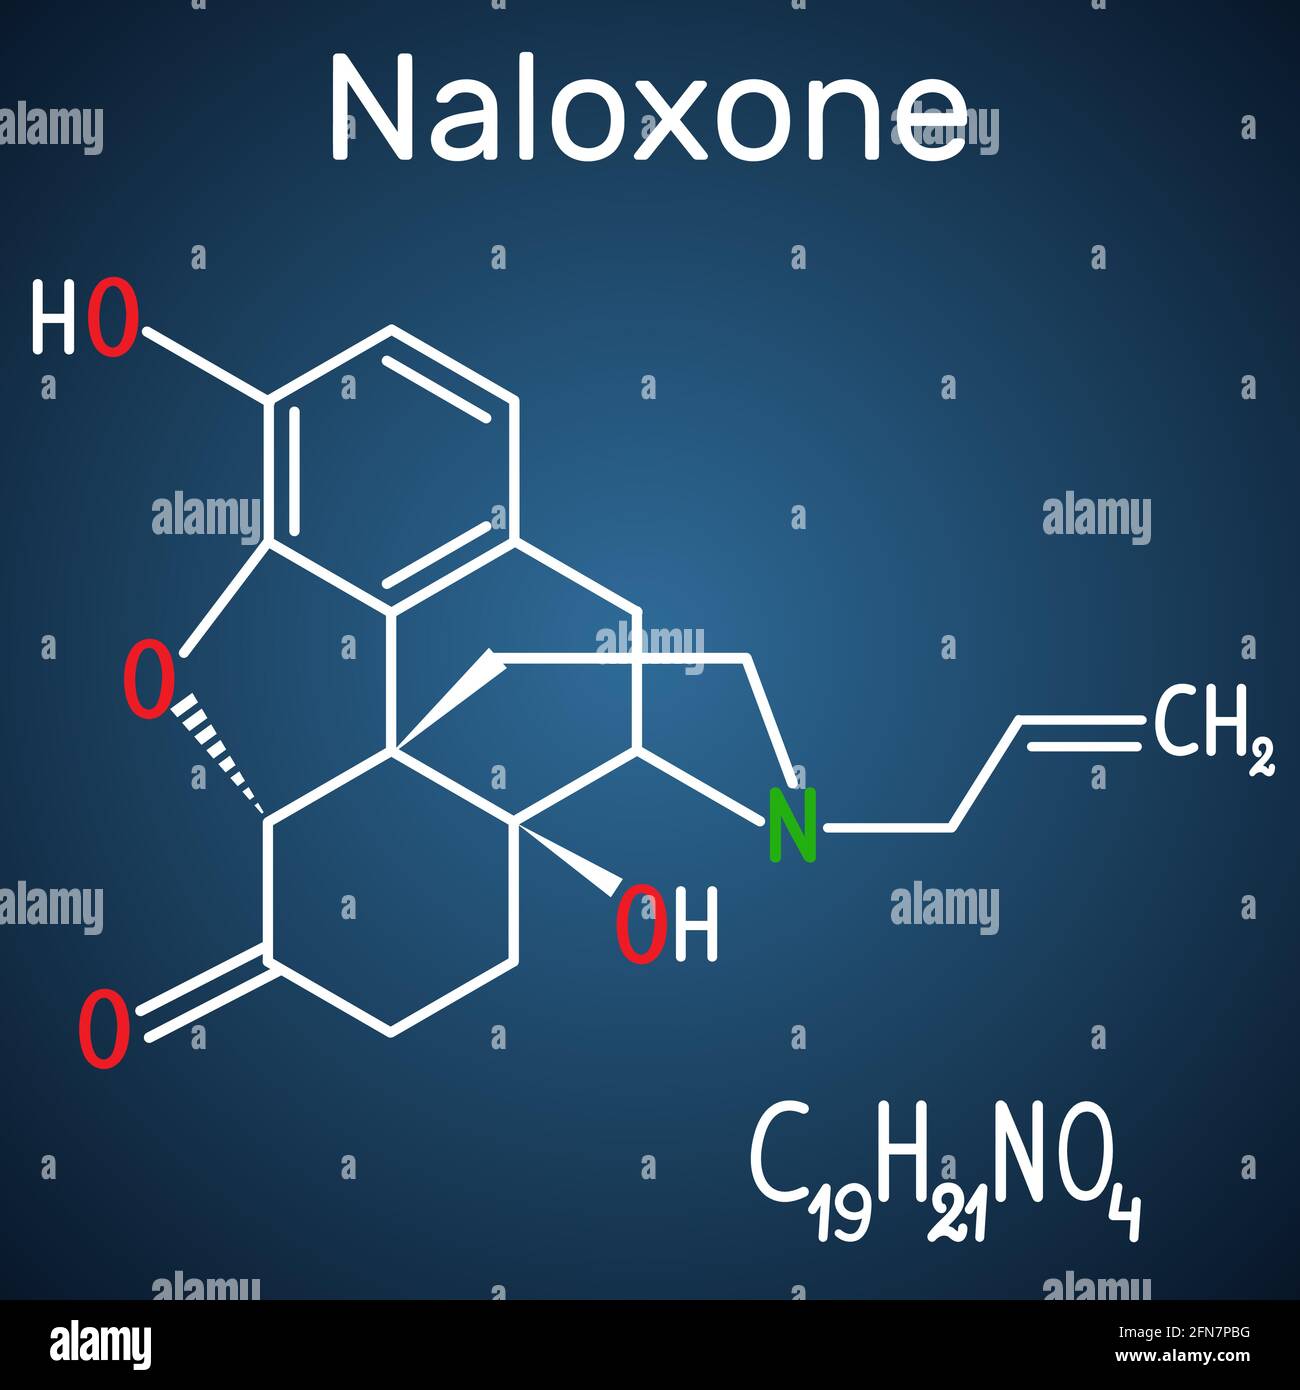 Naloxon-Molekül. Es wird verwendet, um die Auswirkungen von Opioiden zu blockieren, insbesondere bei Überdosierung. Strukturelle chemische Formel und Molekülmodell auf dem dunkelblauen Stock Vektor